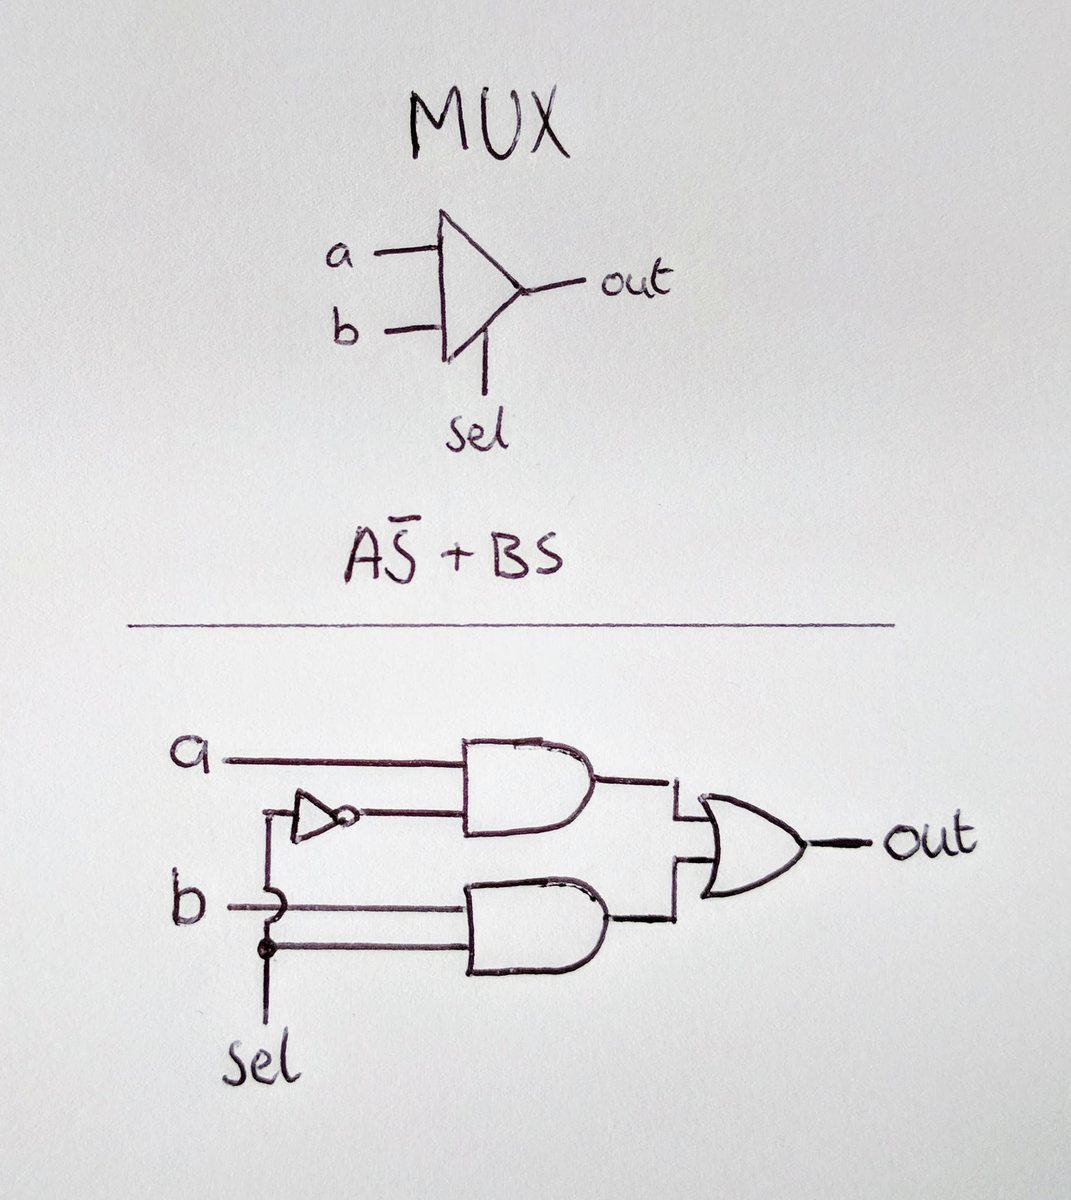 Simplified Mux circuit diagram